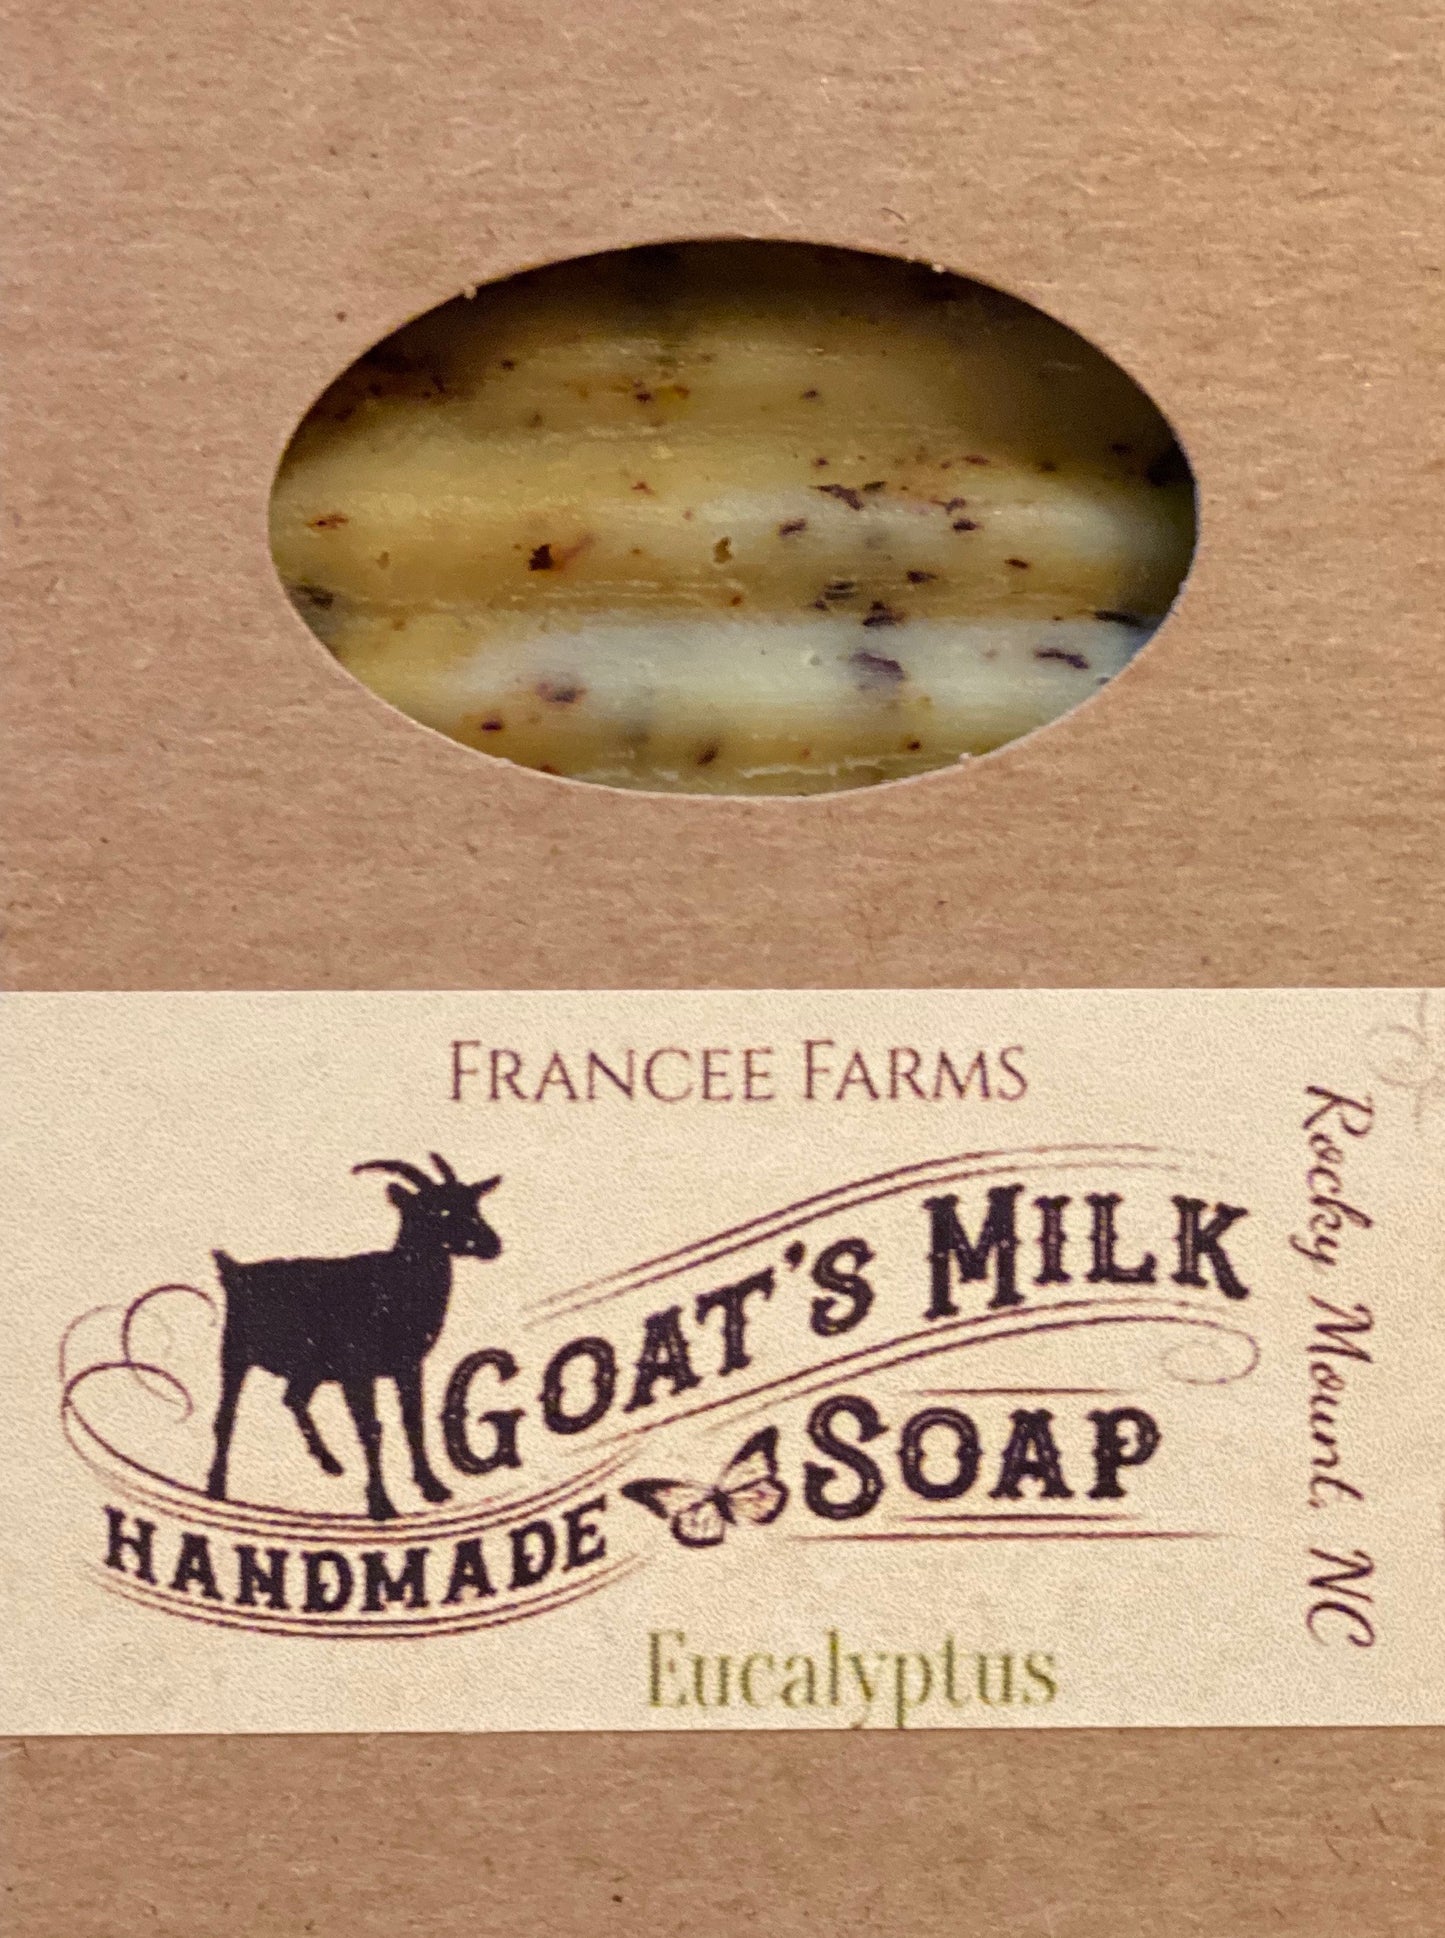 Eucalyptus Goat Milk Soap